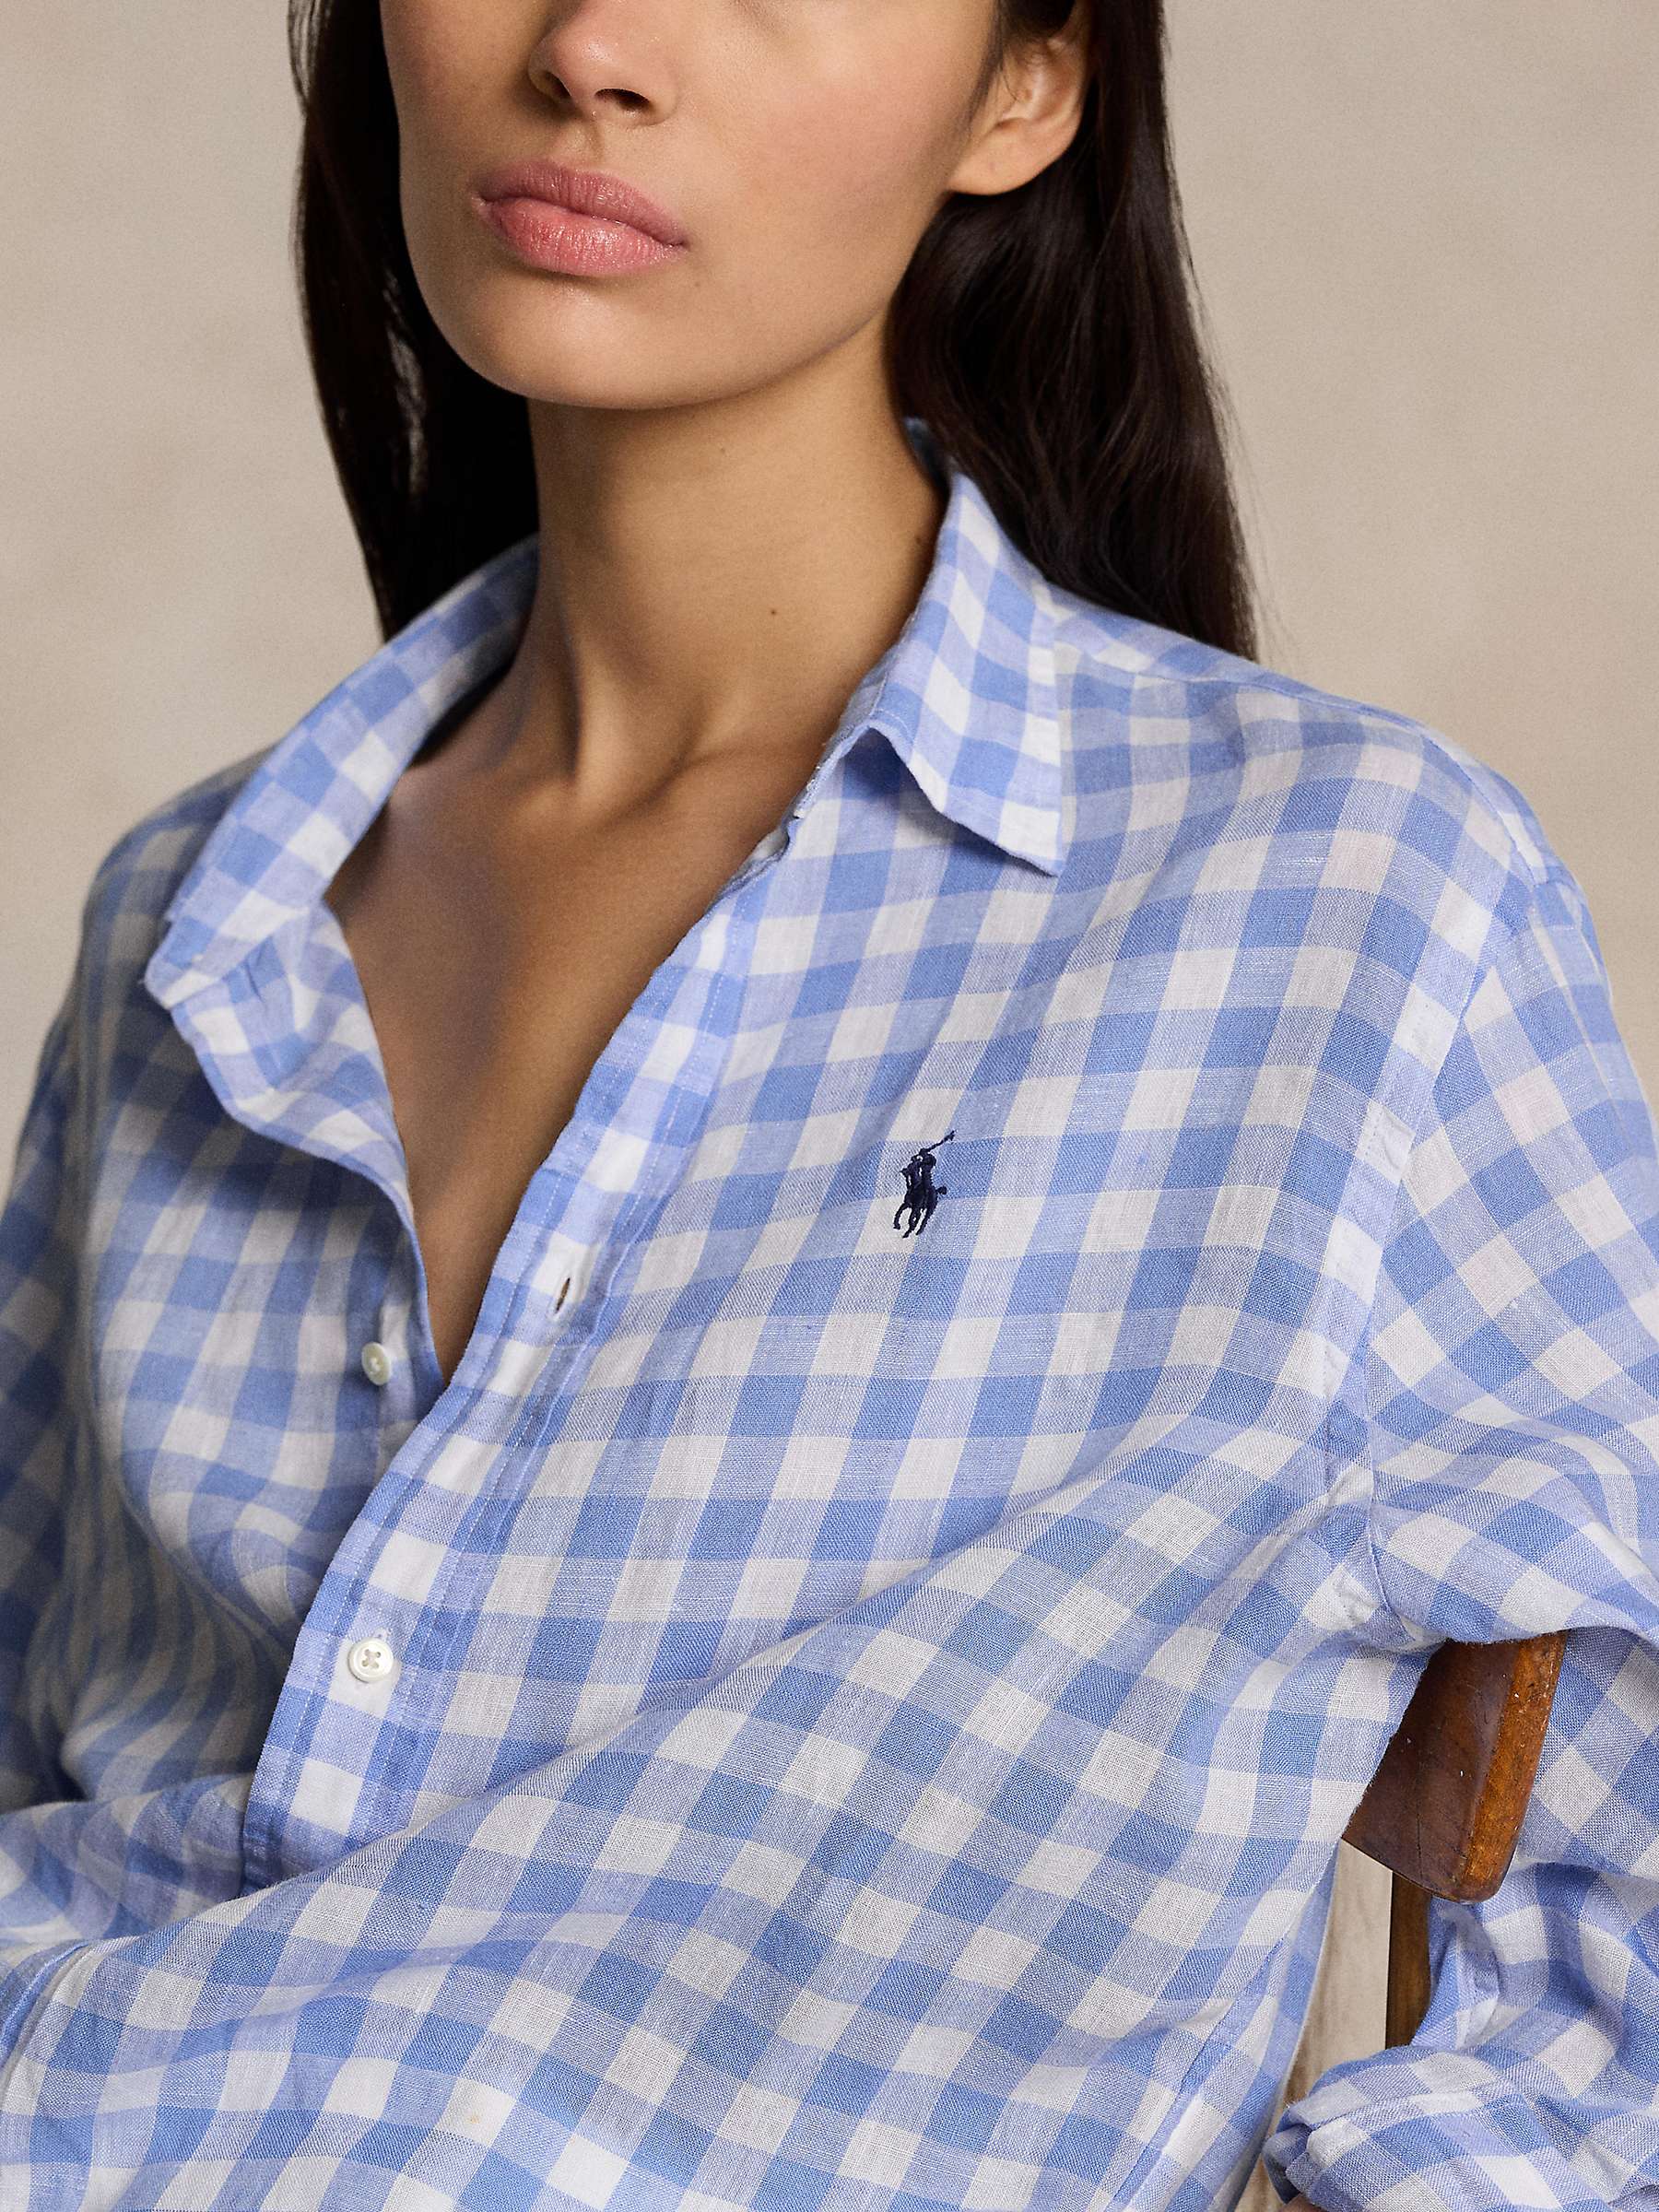 Buy Polo Ralph Lauren Gingham Linen Shirt, Blue/White Online at johnlewis.com